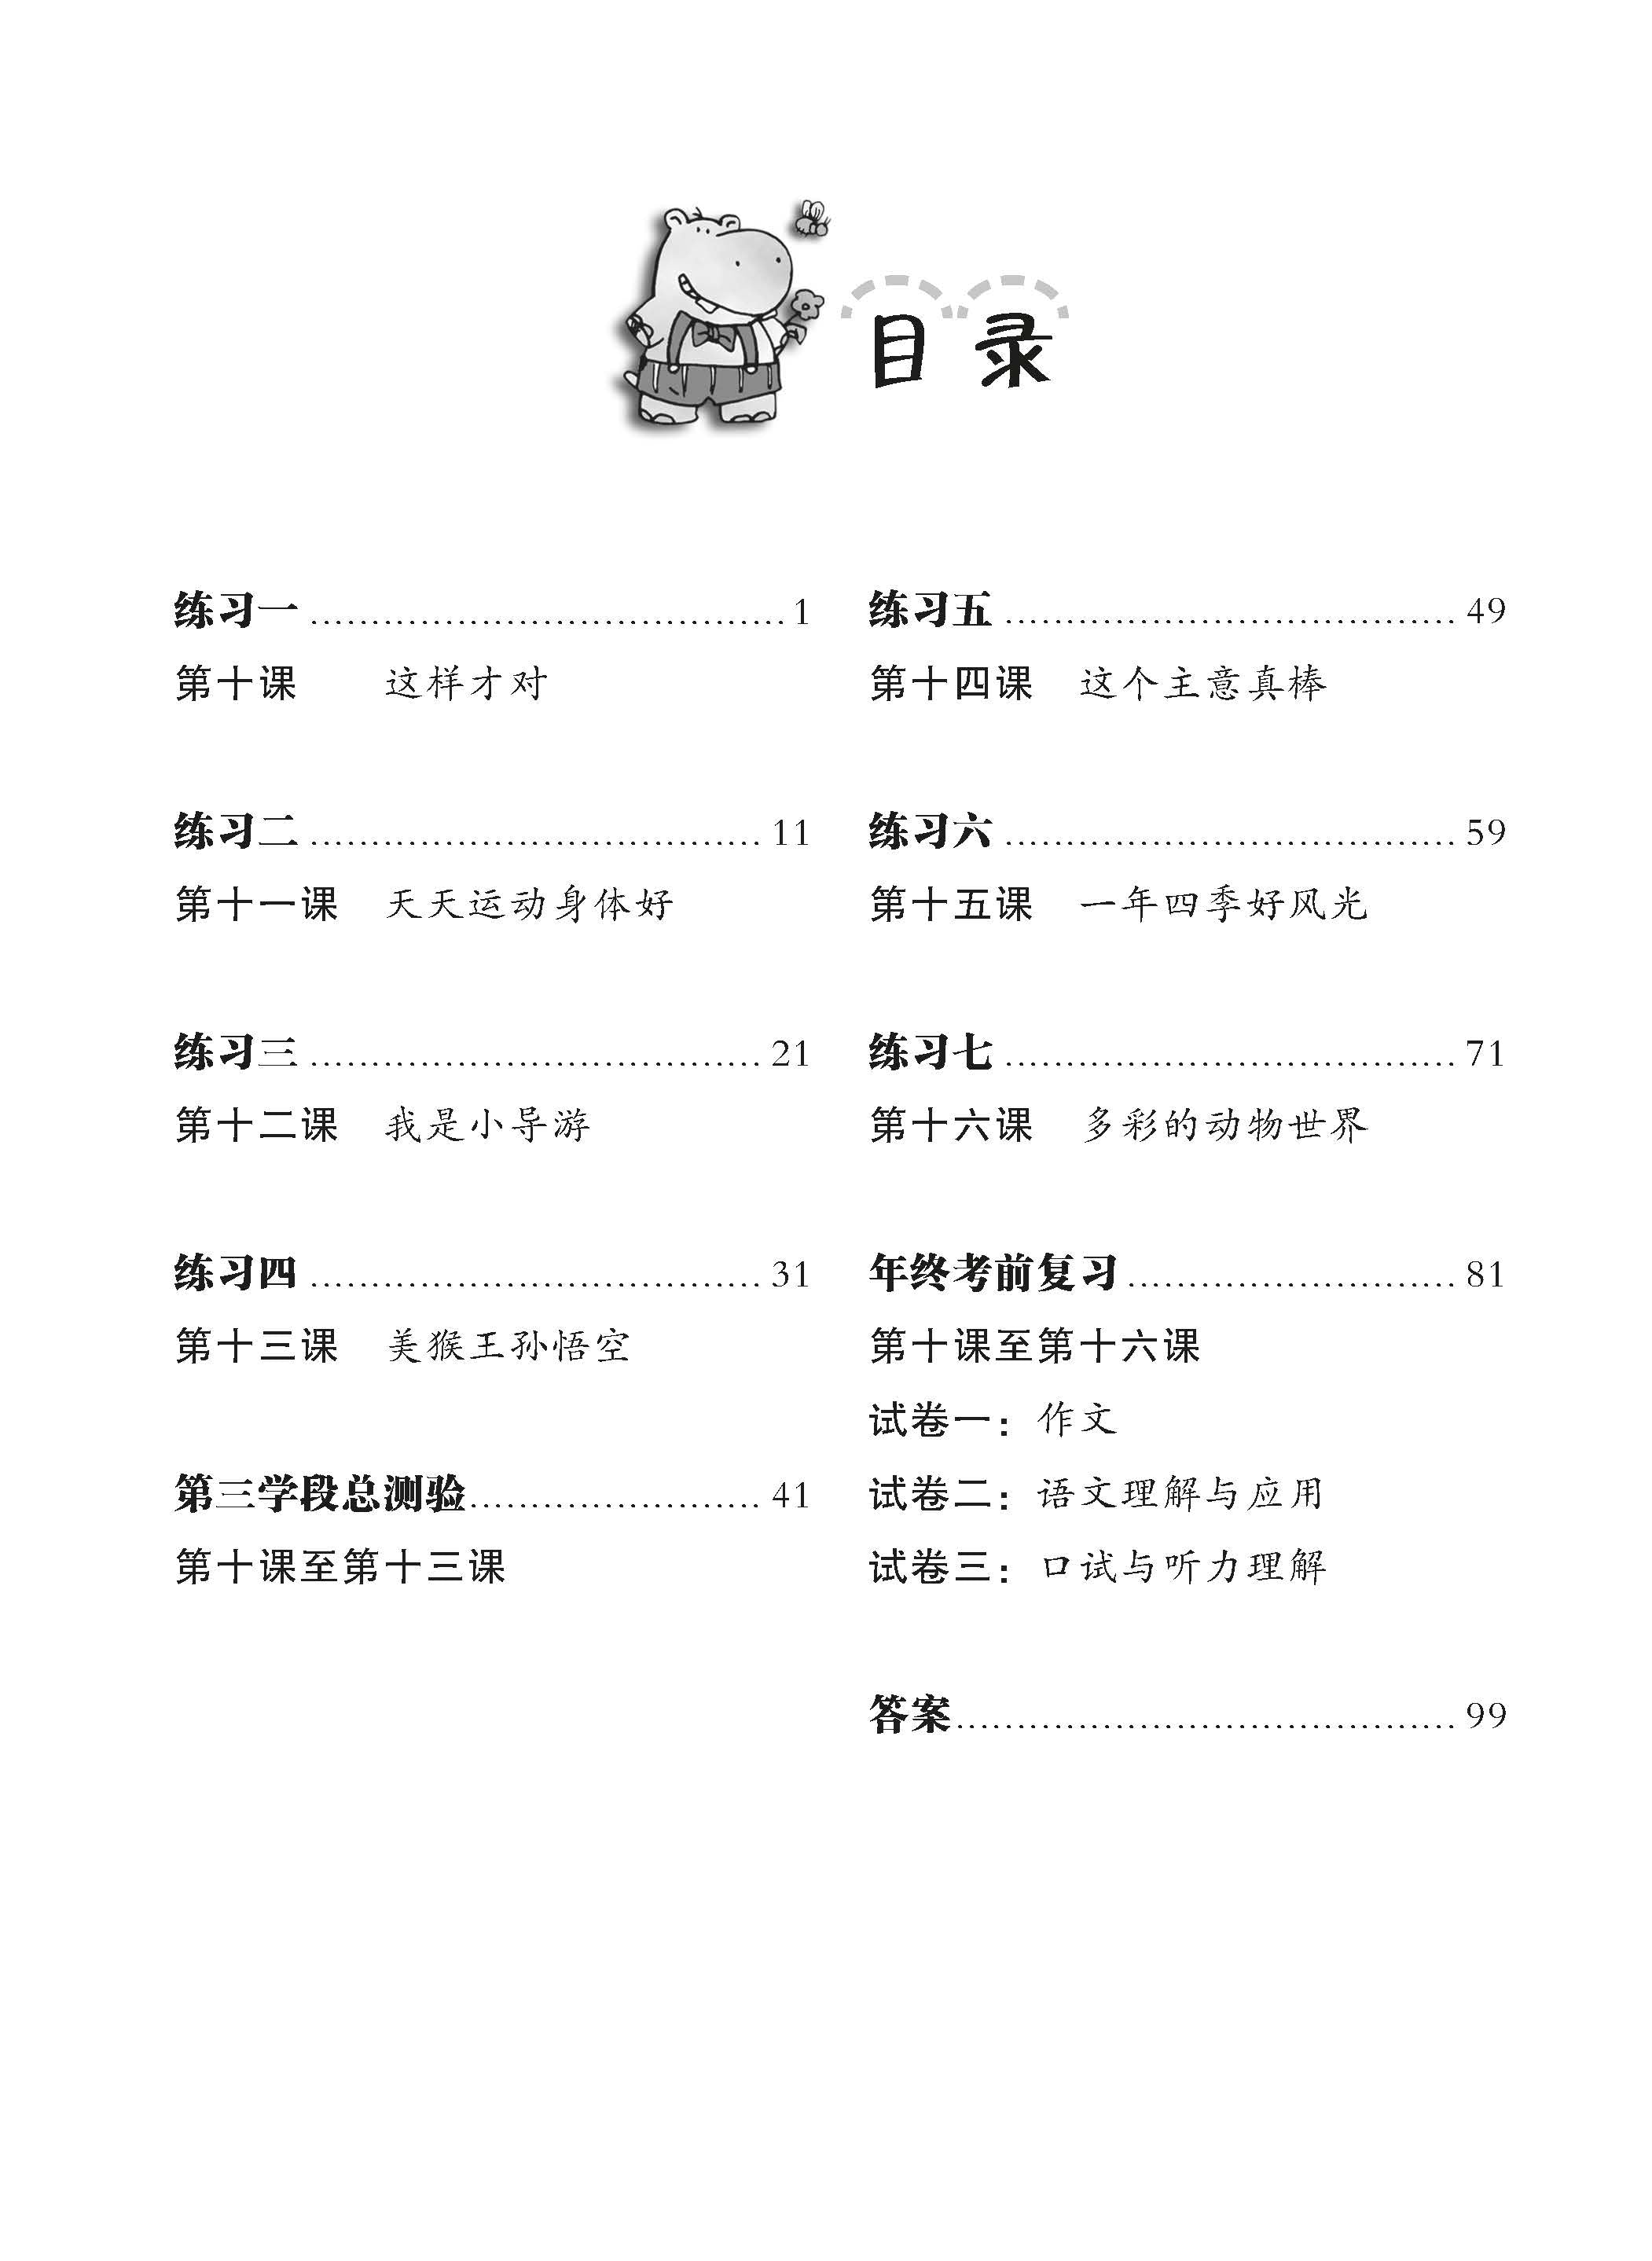 Primary 4B Chinese Weekly Revision 每周华文课文复习